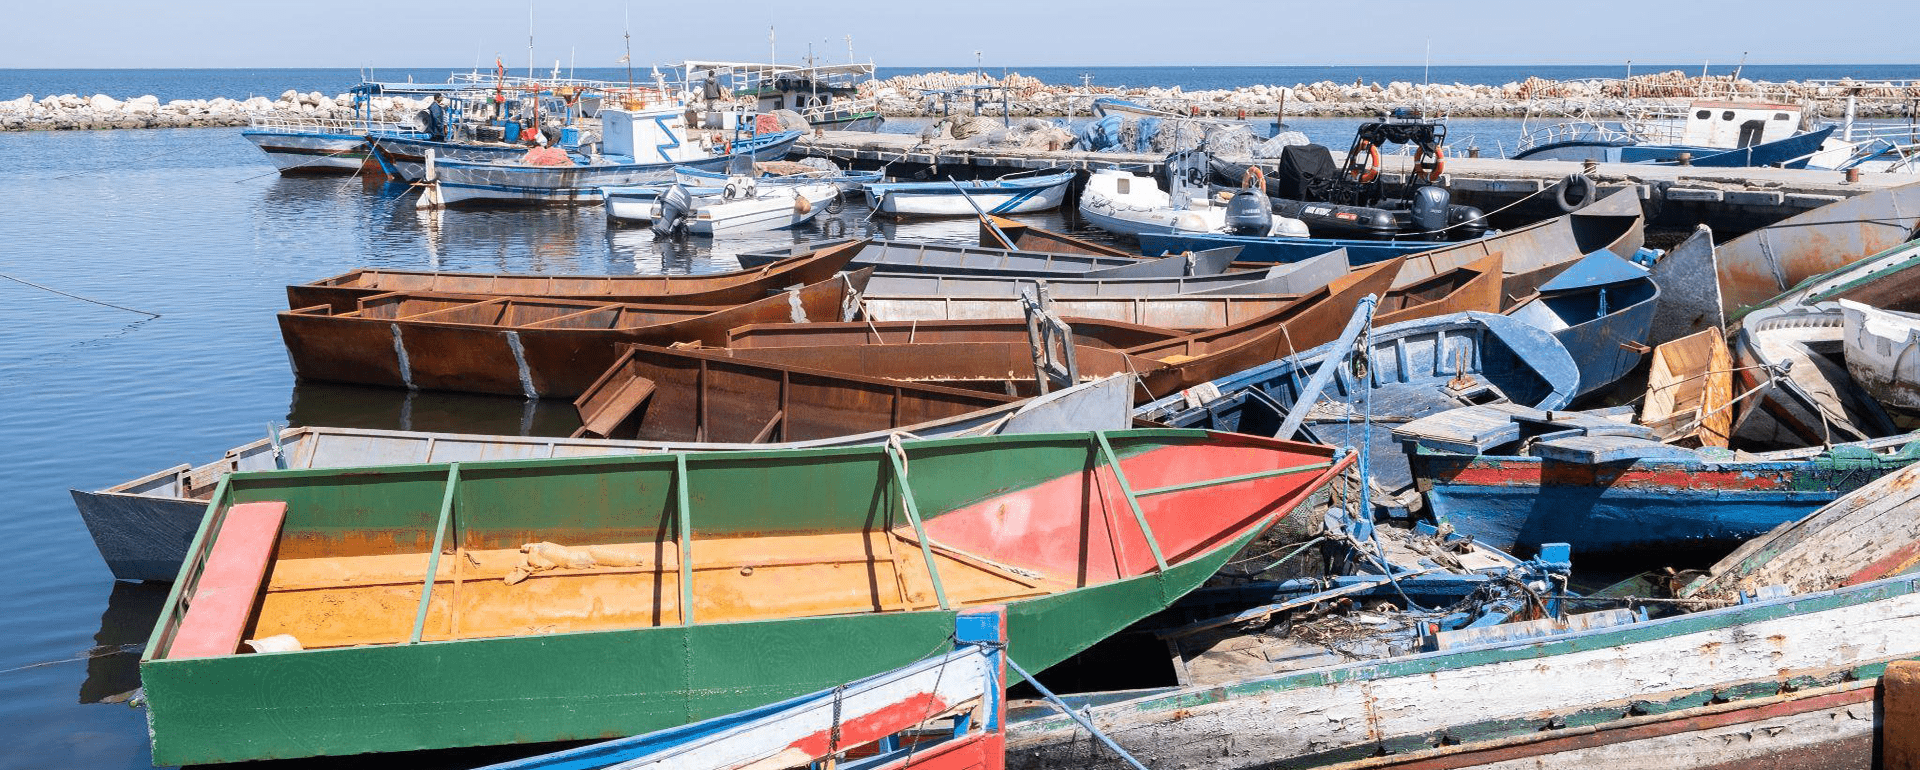 Tunesien ist kein sicheres Herkunftsland und kein sicherer Ort für aus Seenot Gerettete 